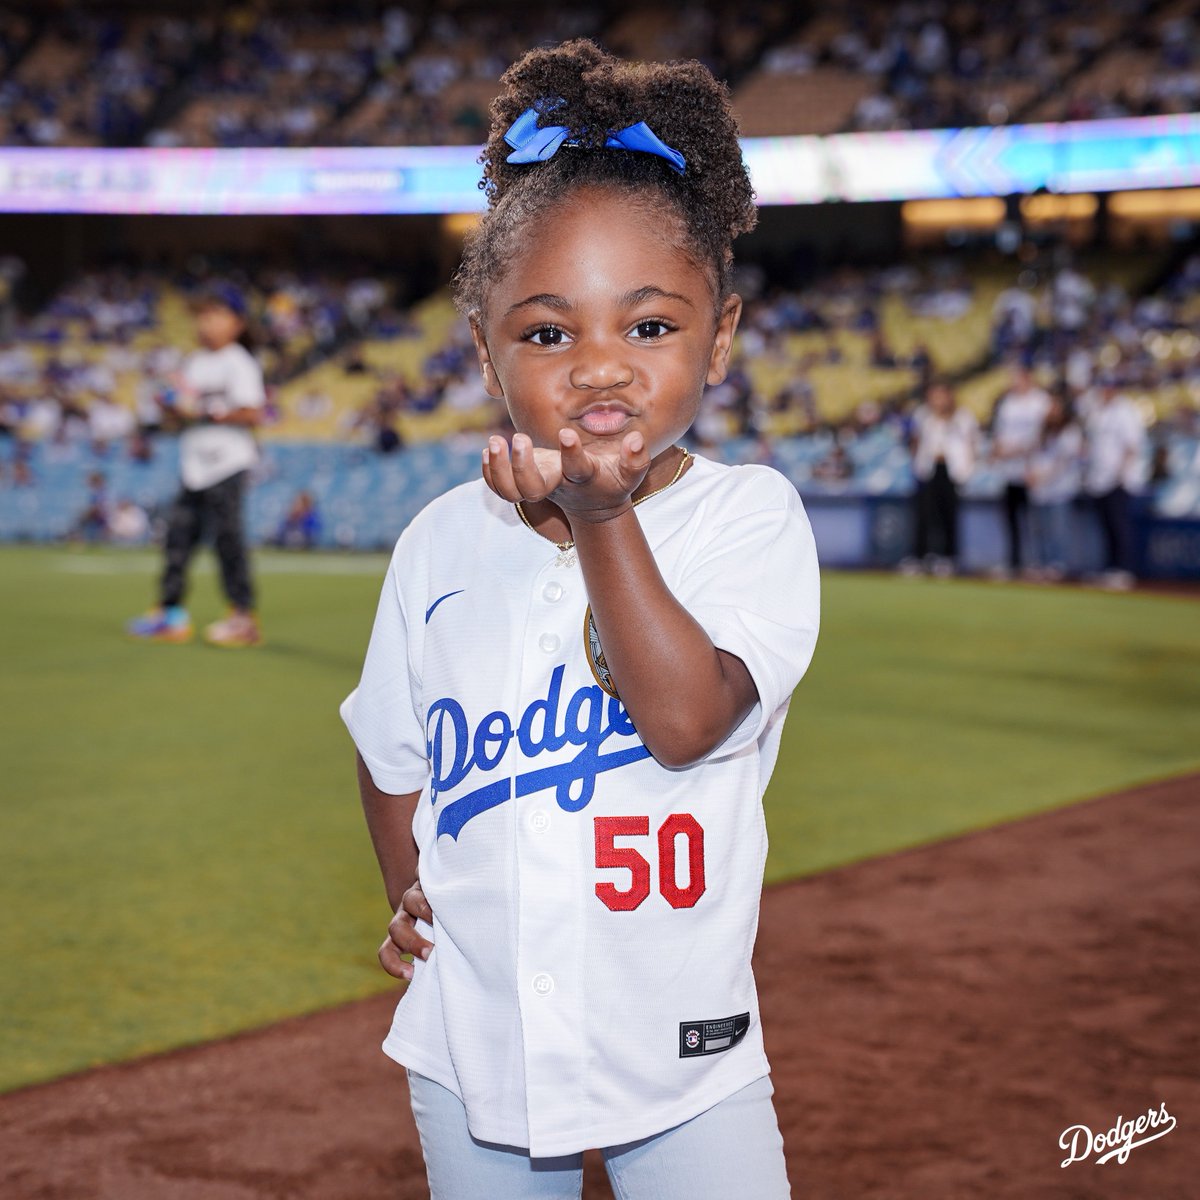 espnW on X: Mookie Betts' daughter is too cute 😍 (via @Dodgers